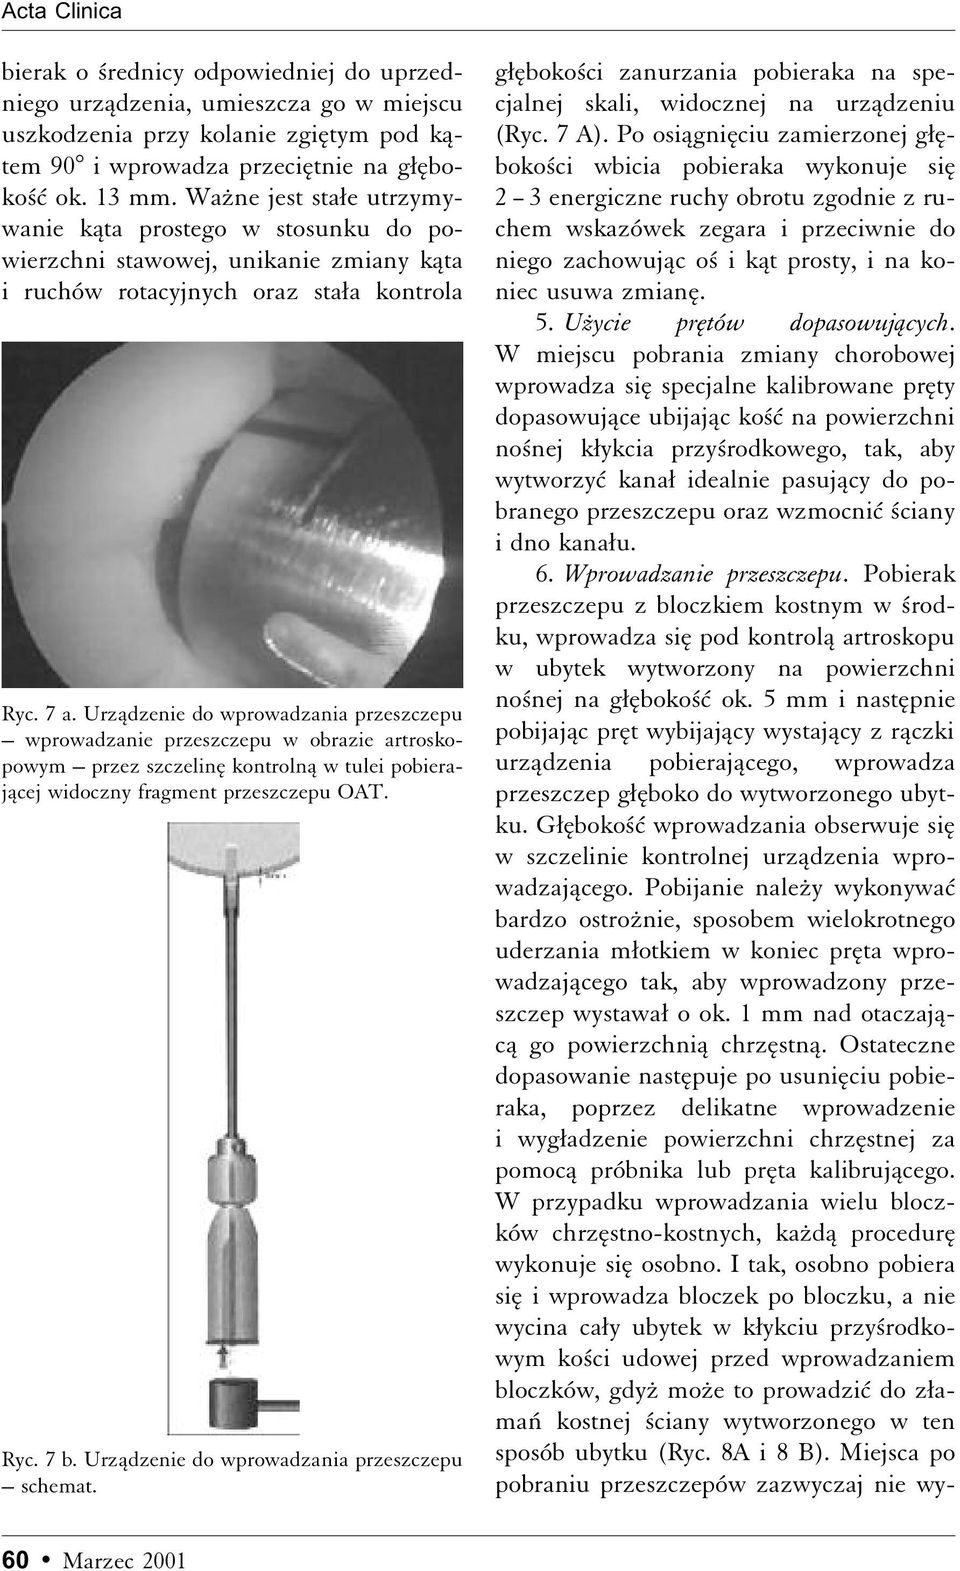 Urzådzenie do wprowadzania przeszczepu wprowadzanie przeszczepu w obrazie artroskopowym przez szczelinæ kontrolnå w tulei pobierajåcej widoczny fragment przeszczepu OAT. Ryc. 7 b.